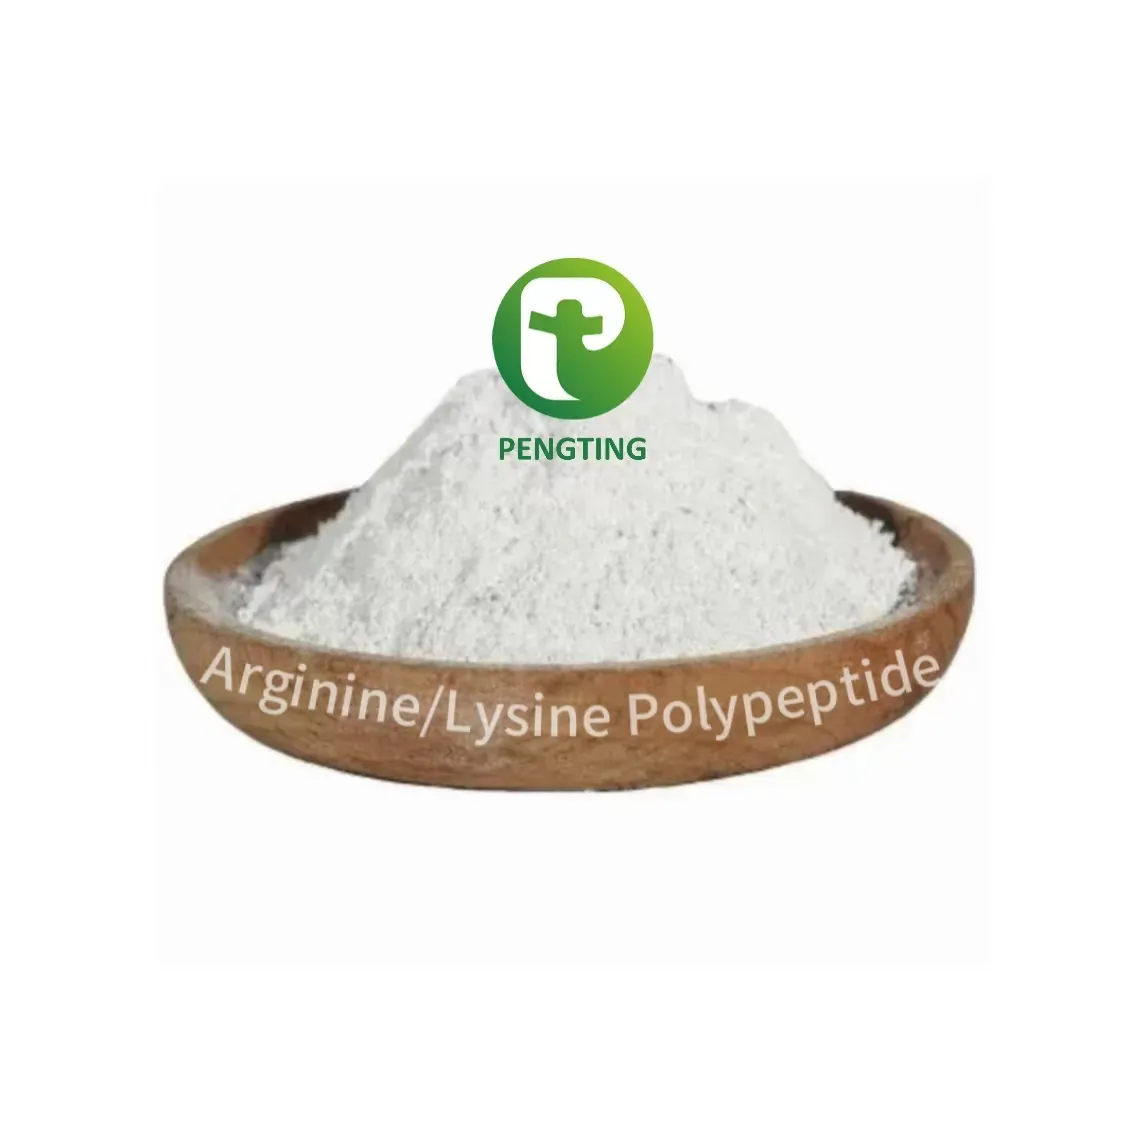 Fornecedores de matérias-primas cosméticas de peptídeos químicos diários 98% de alta pureza CAS 936616-33-0 polipeptídeo de arginina/lisina